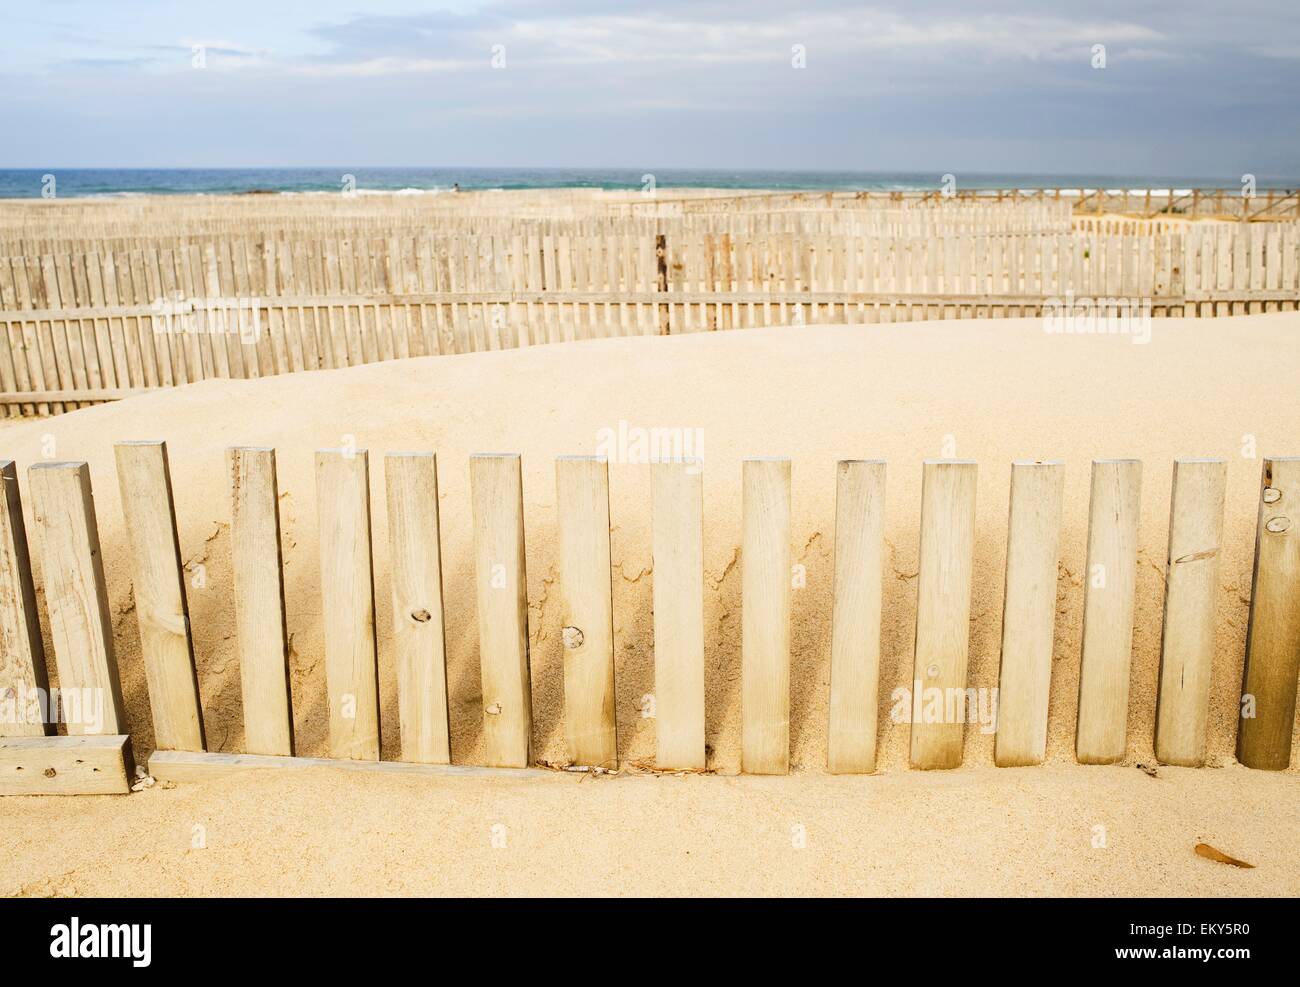 Wooden Fences On The Beach, Cadiz, Spain Stock Photo